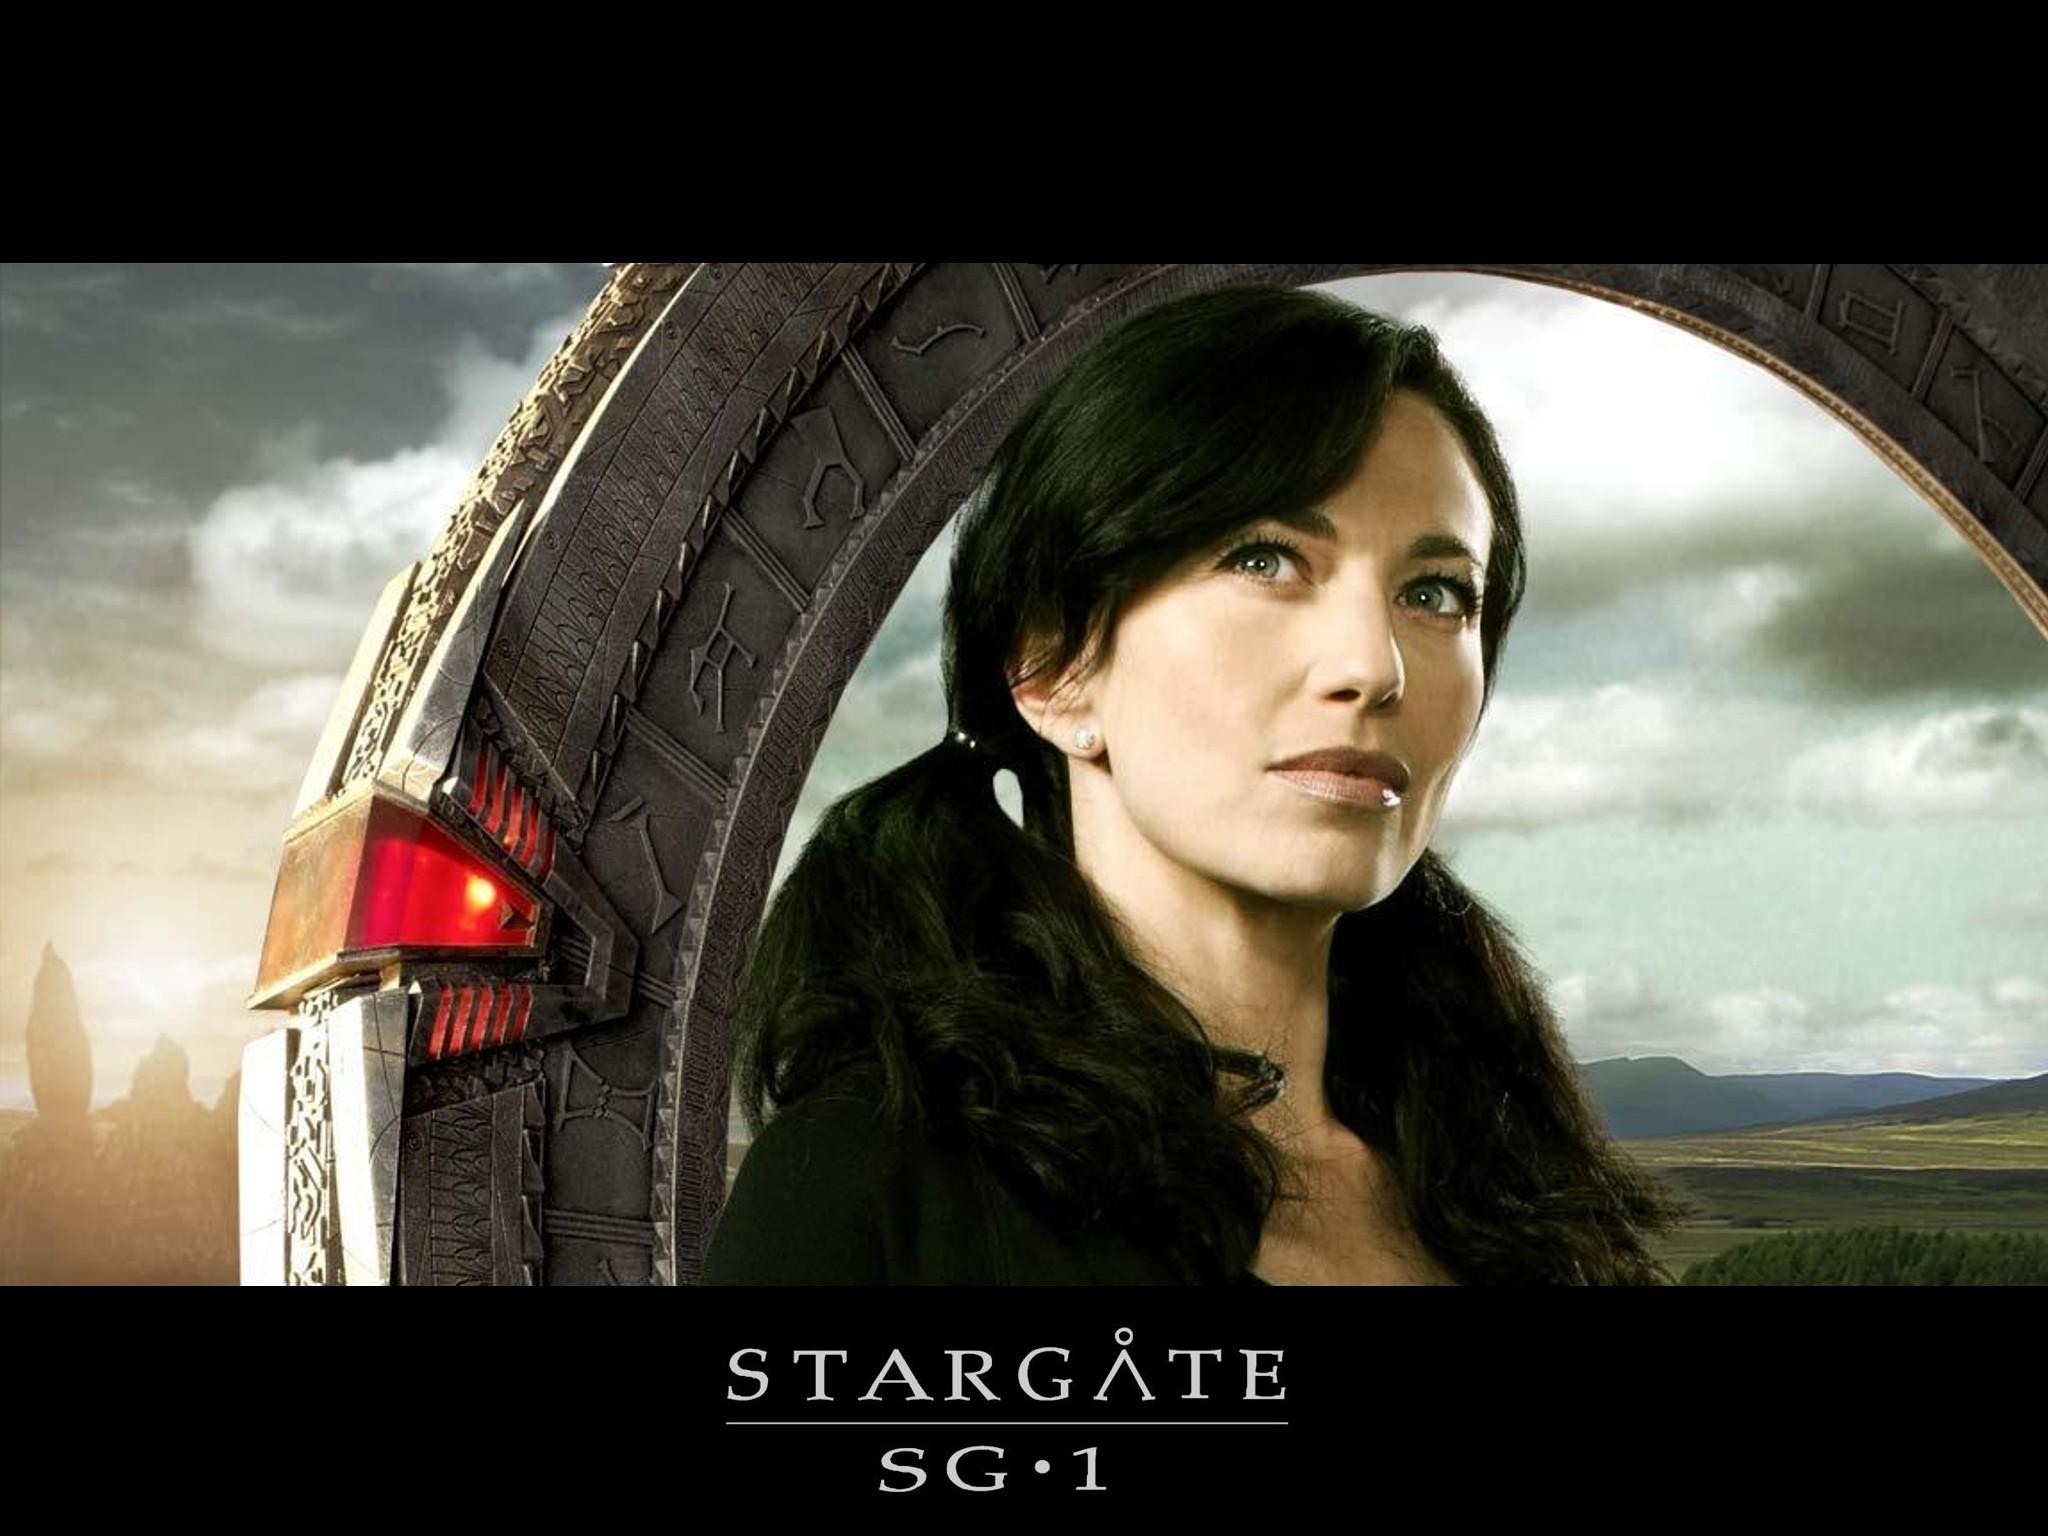 Sg1 - Stargate Sg1 / Atlantis Wallpaper 2798537 - Fanpop